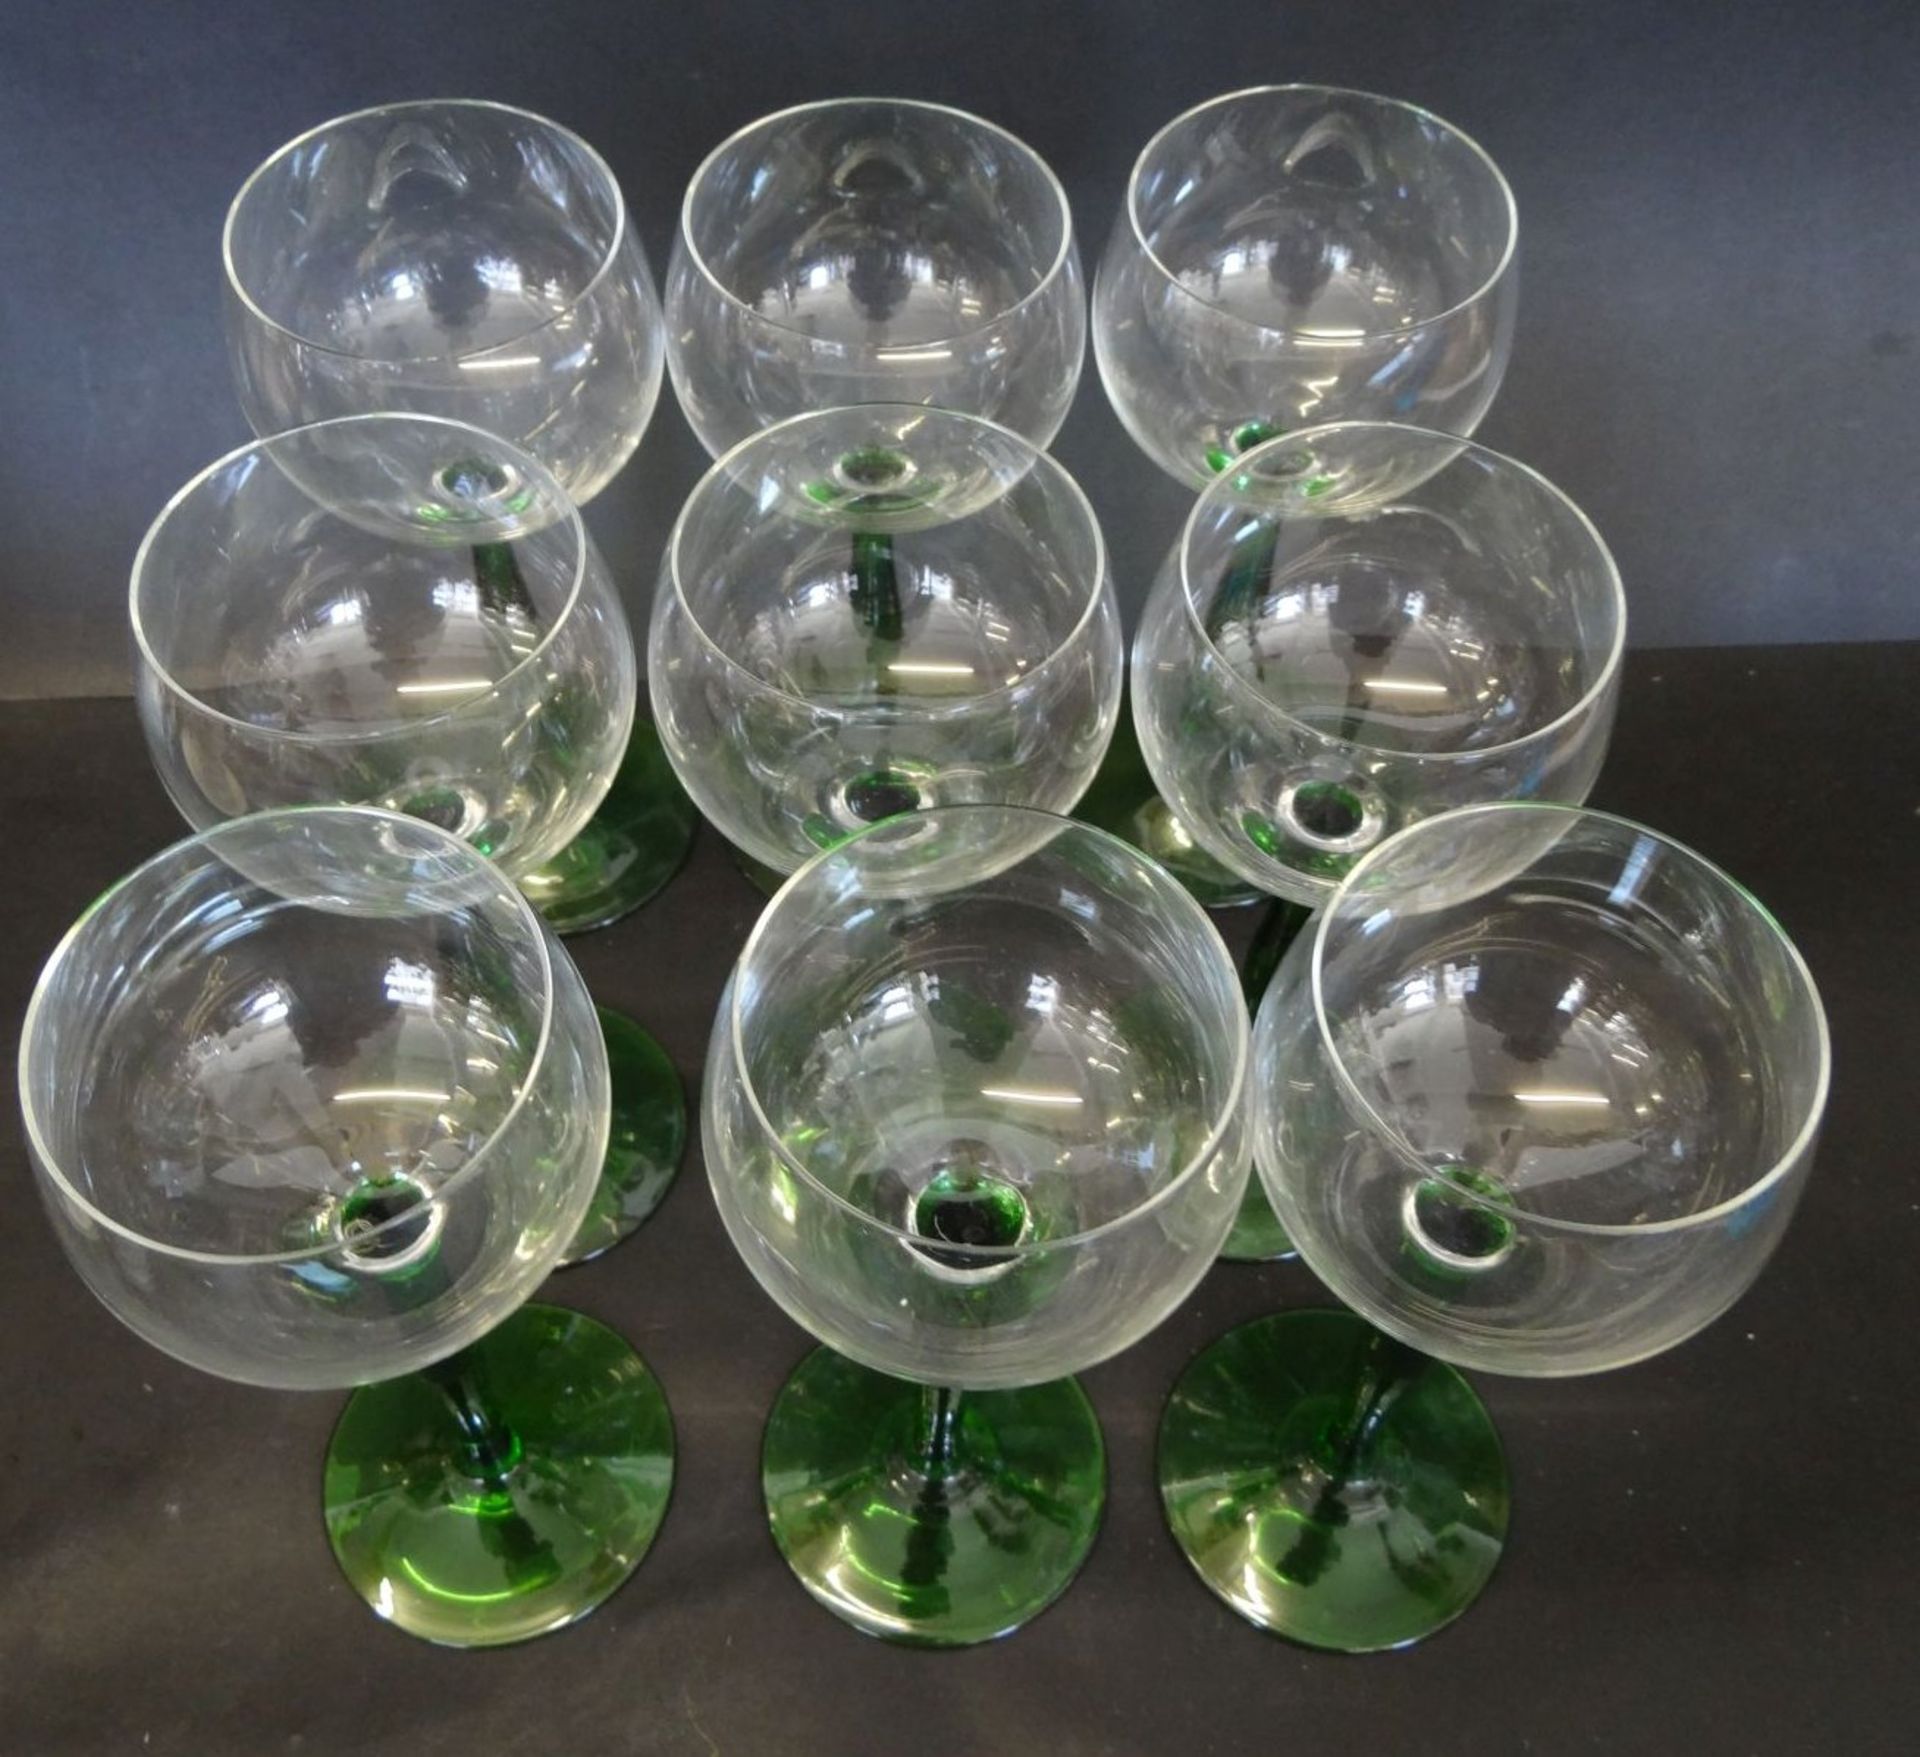 9 Weingläser mit grünen Stiel, H-17 cm, 1x minimaler Chip am Ra - Bild 2 aus 4